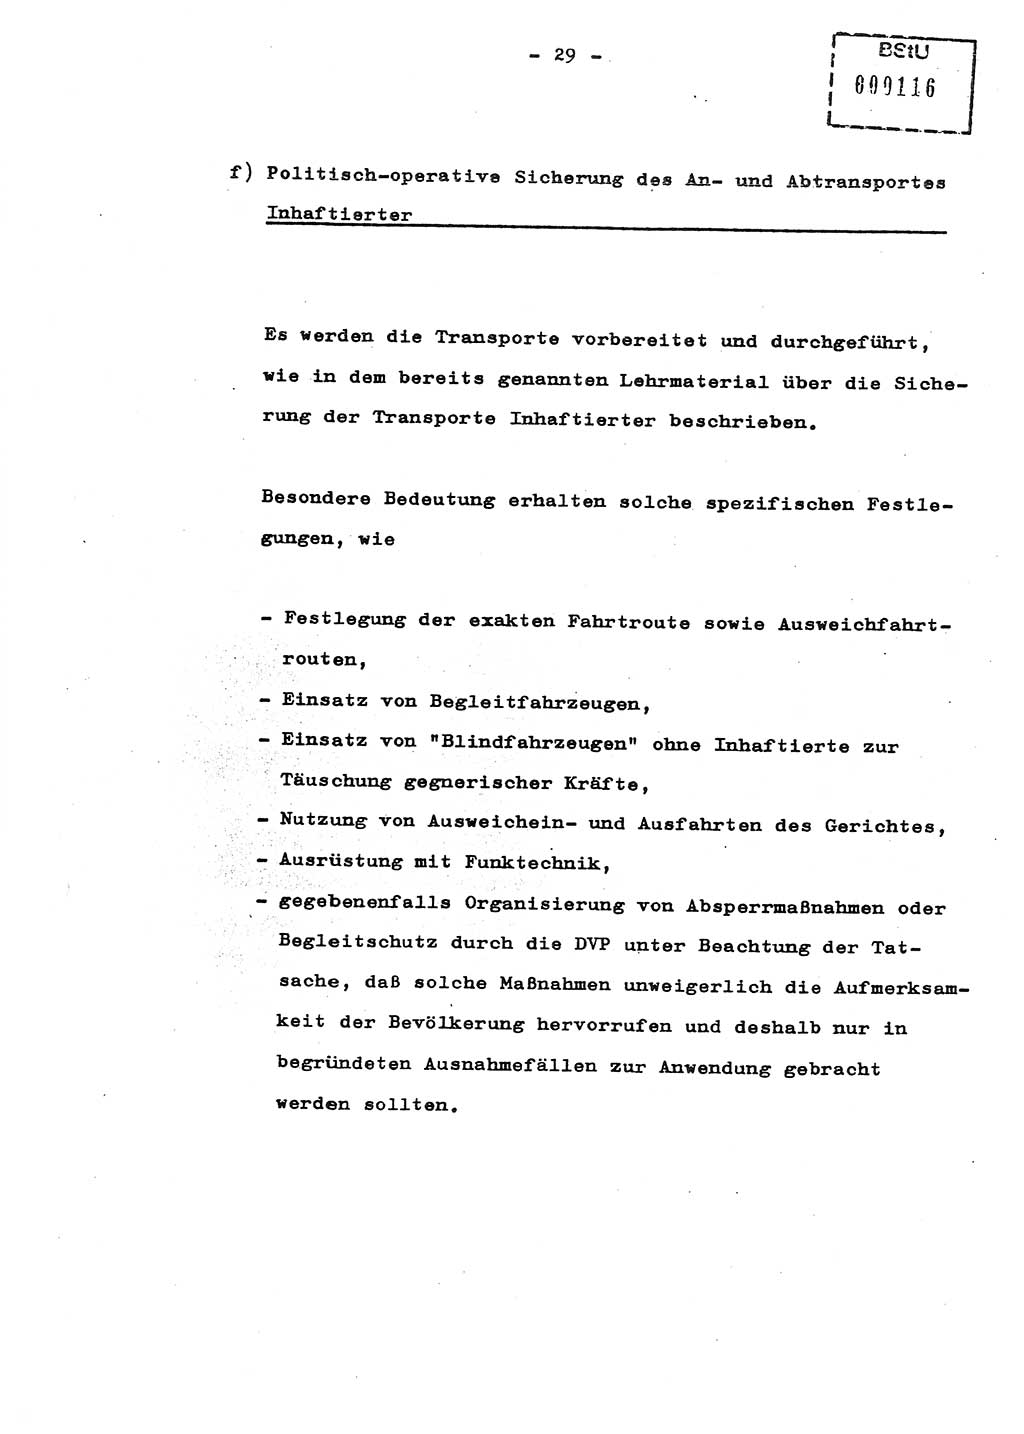 Schulungsmaterial Exemplar-Nr.: 8, Ministerium für Staatssicherheit [Deutsche Demokratische Republik (DDR)], Abteilung (Abt.) ⅩⅣ, Berlin 1987, Seite 29 (Sch.-Mat. Expl. 8 MfS DDR Abt. ⅩⅣ /87 1987, S. 29)